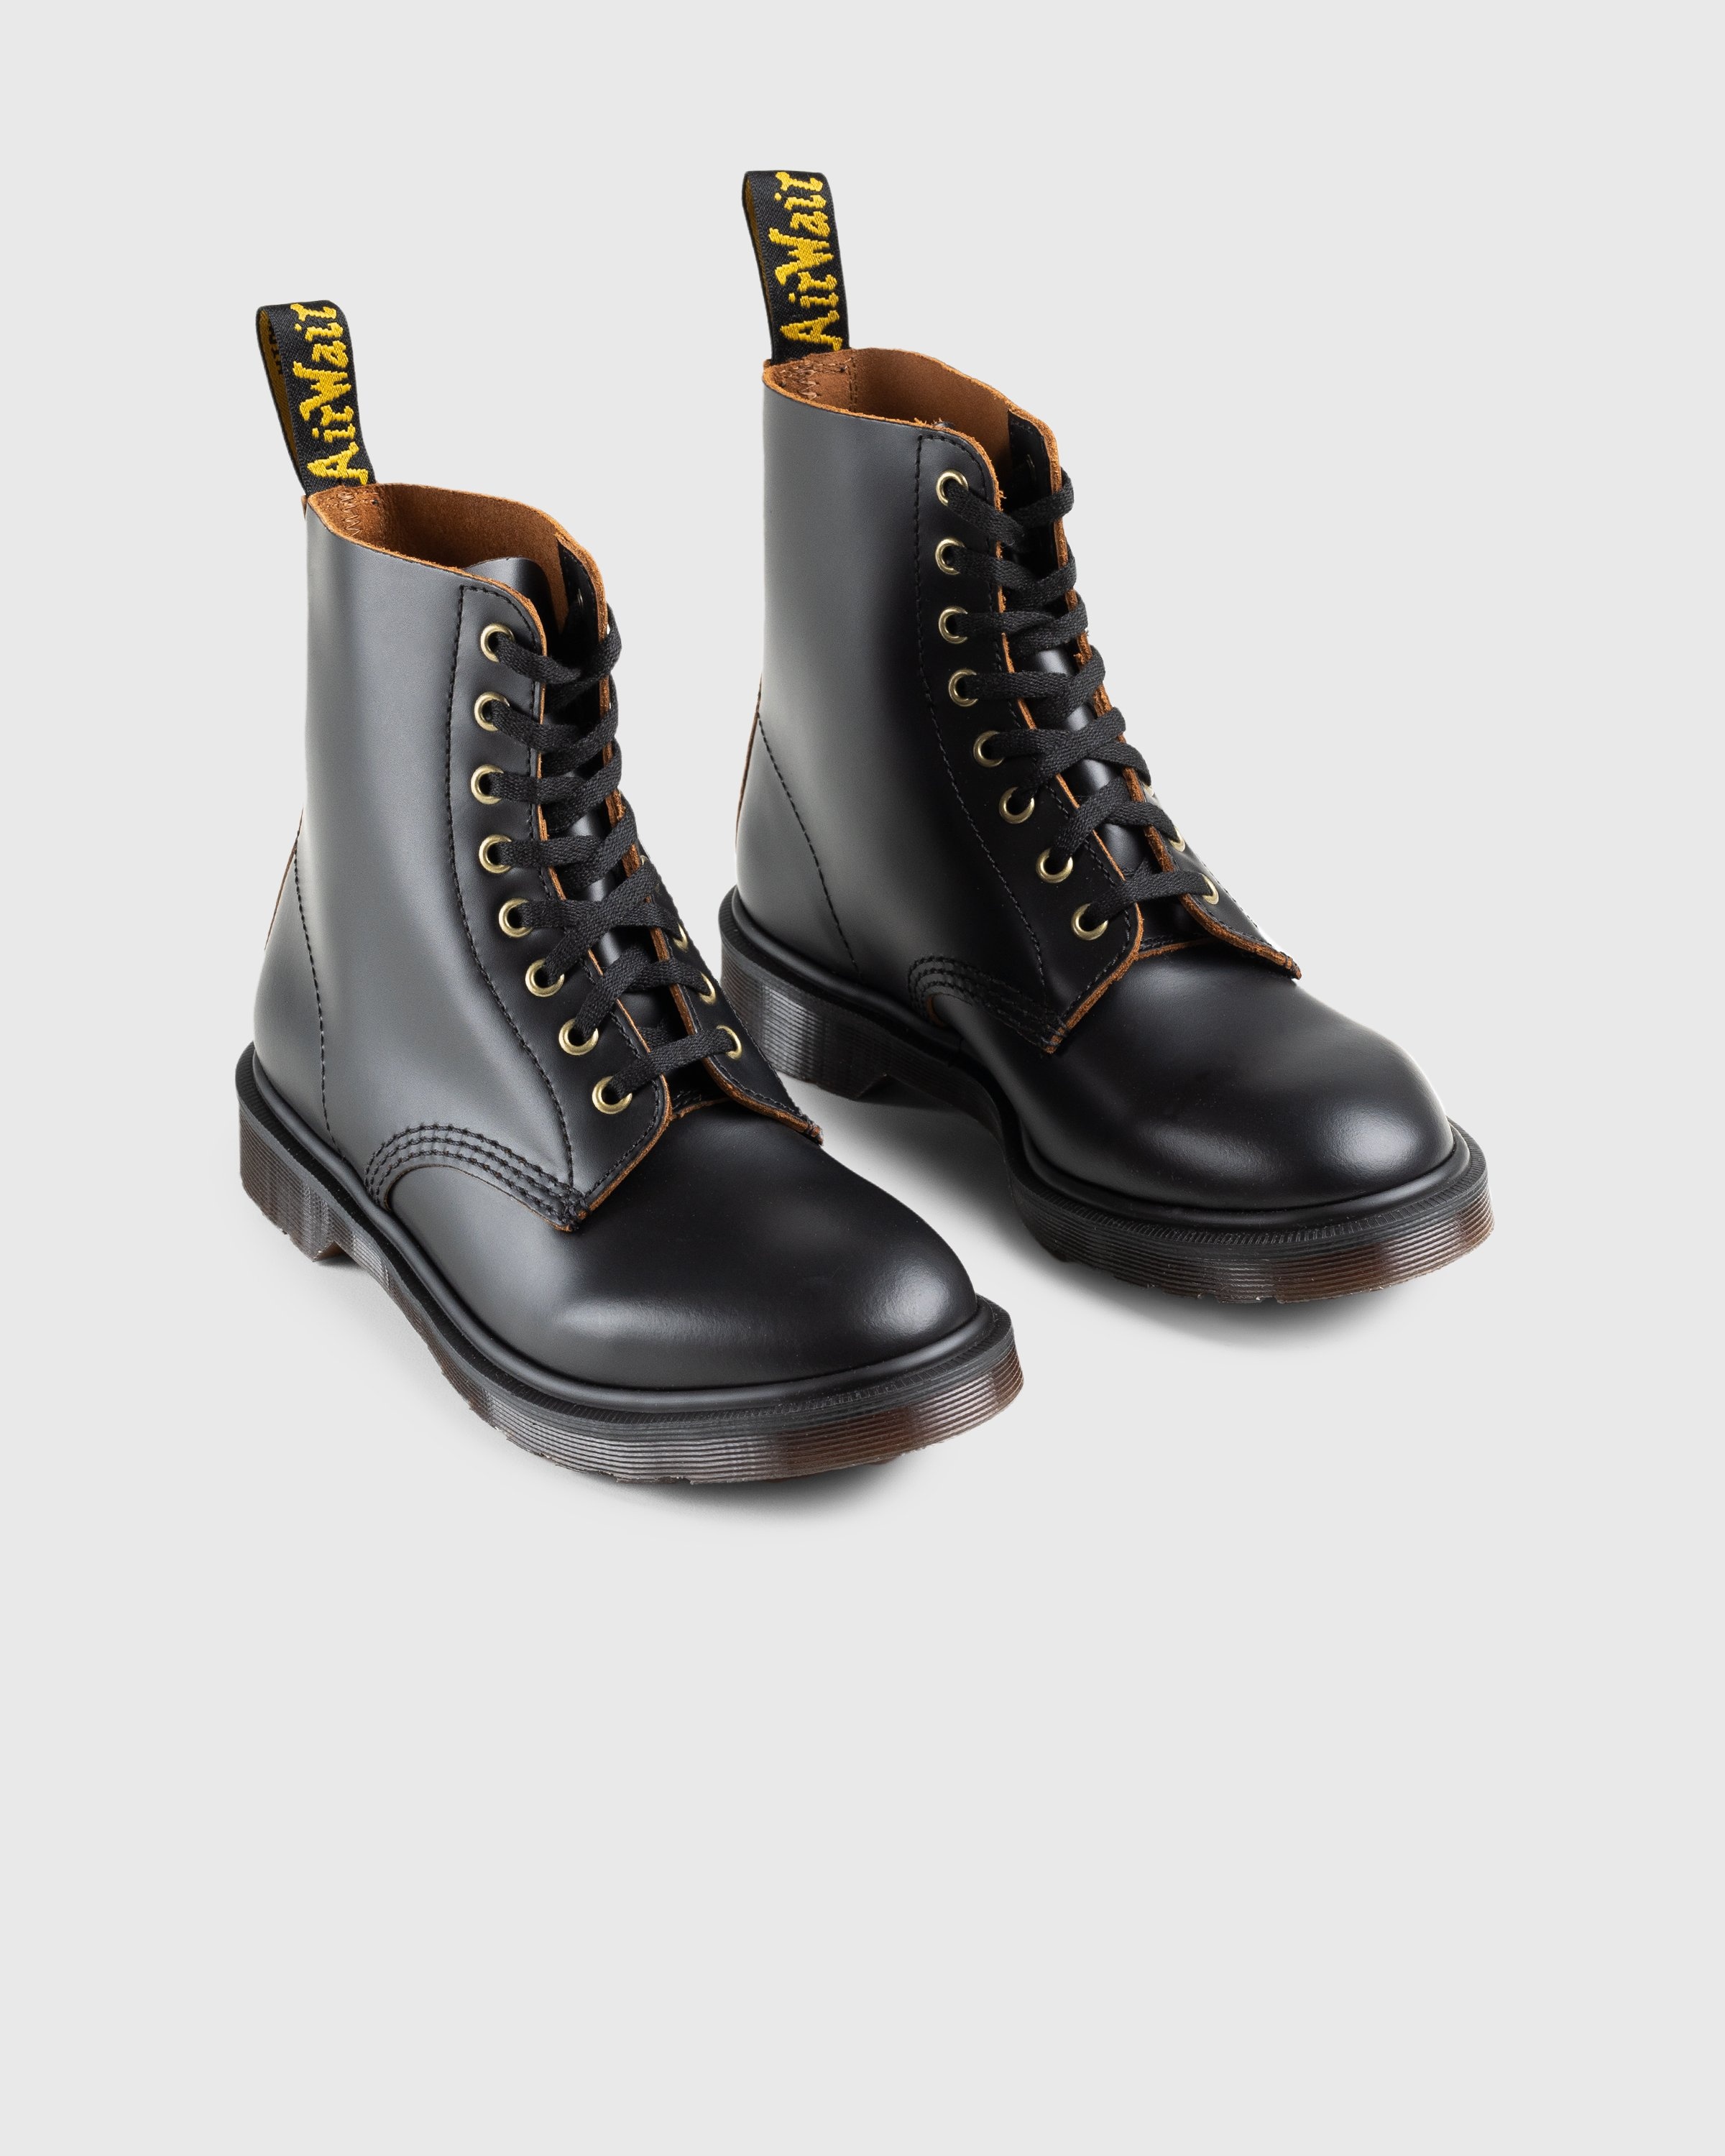 Dr. Martens – 1460 Vintage Smooth Black - Boots - Black - Image 3